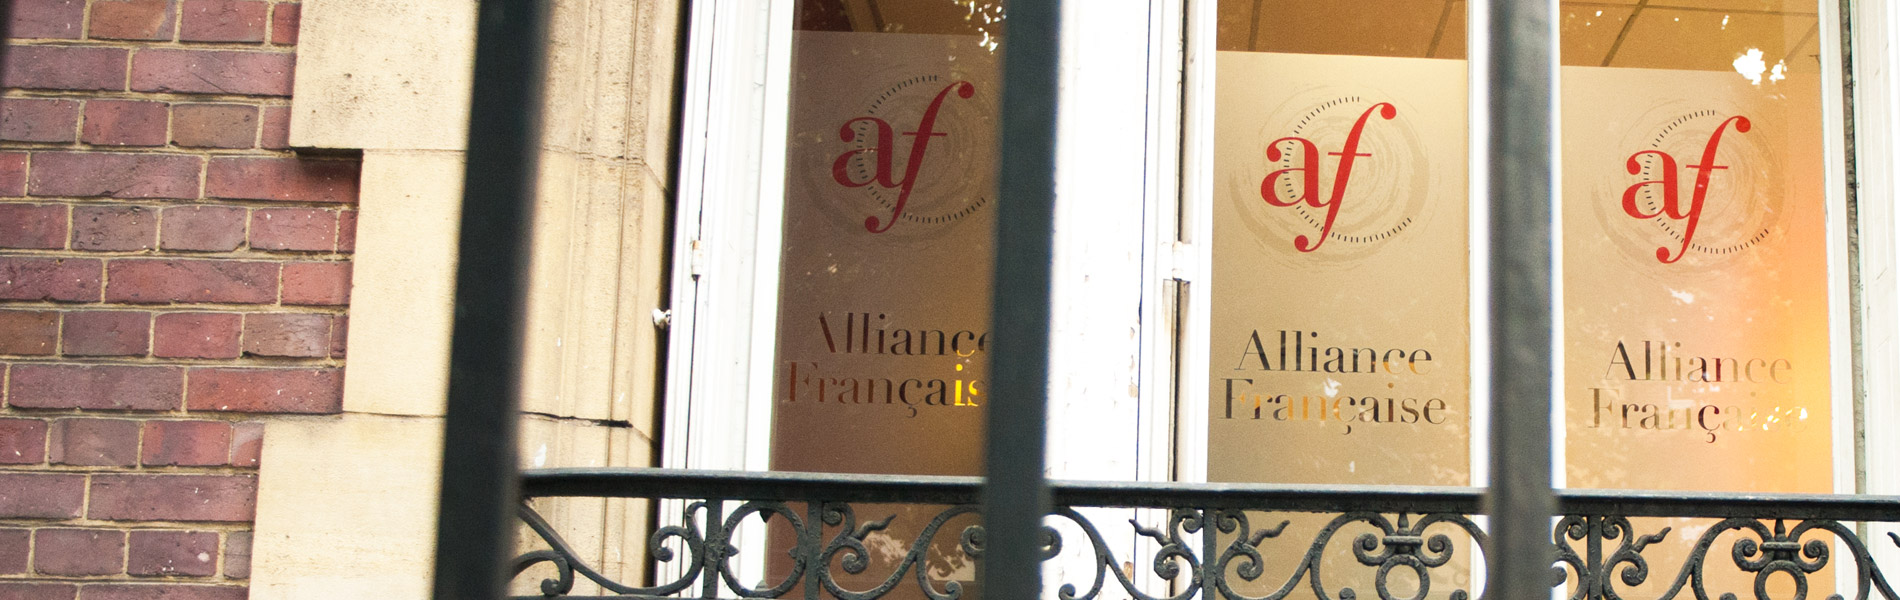 alliance-francaise-rouen-exterieur2